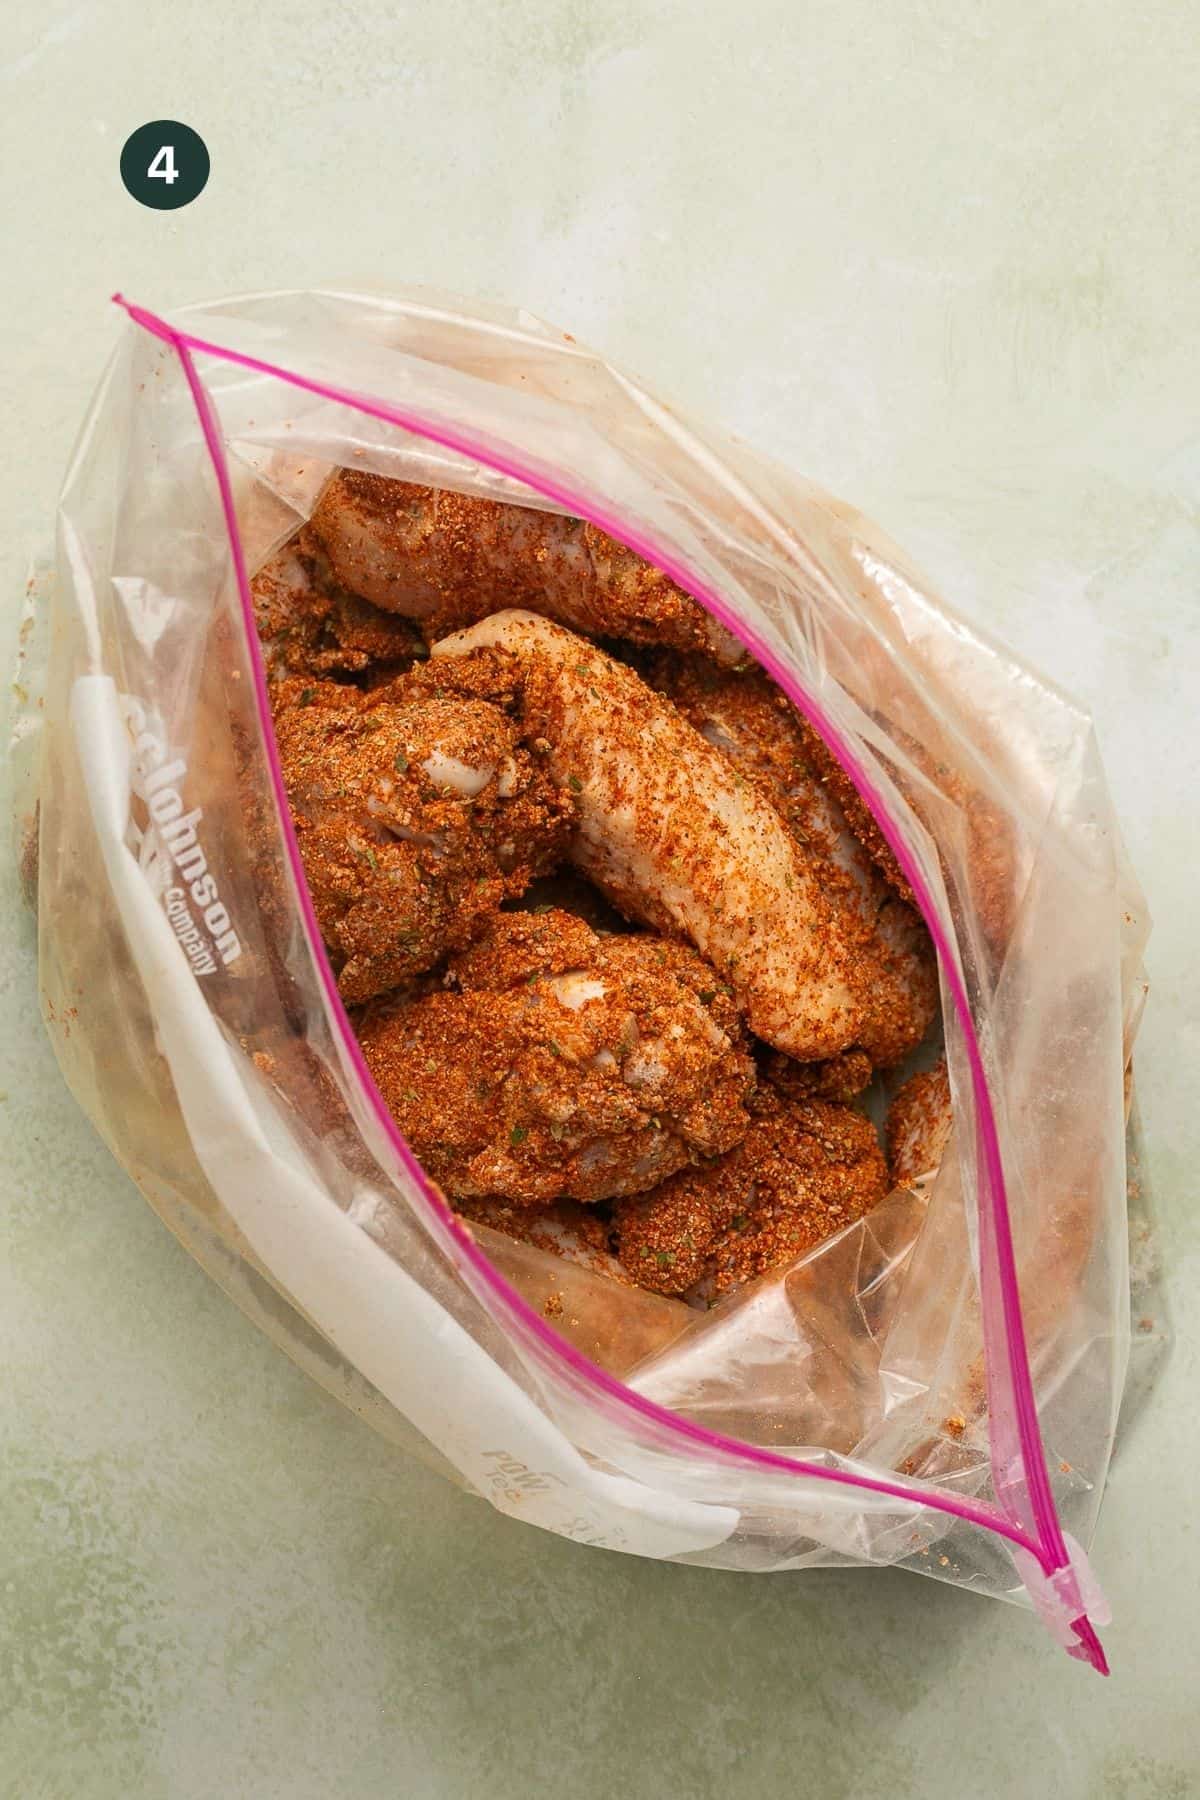 Seasoned and coated wings in a ziplock bag.